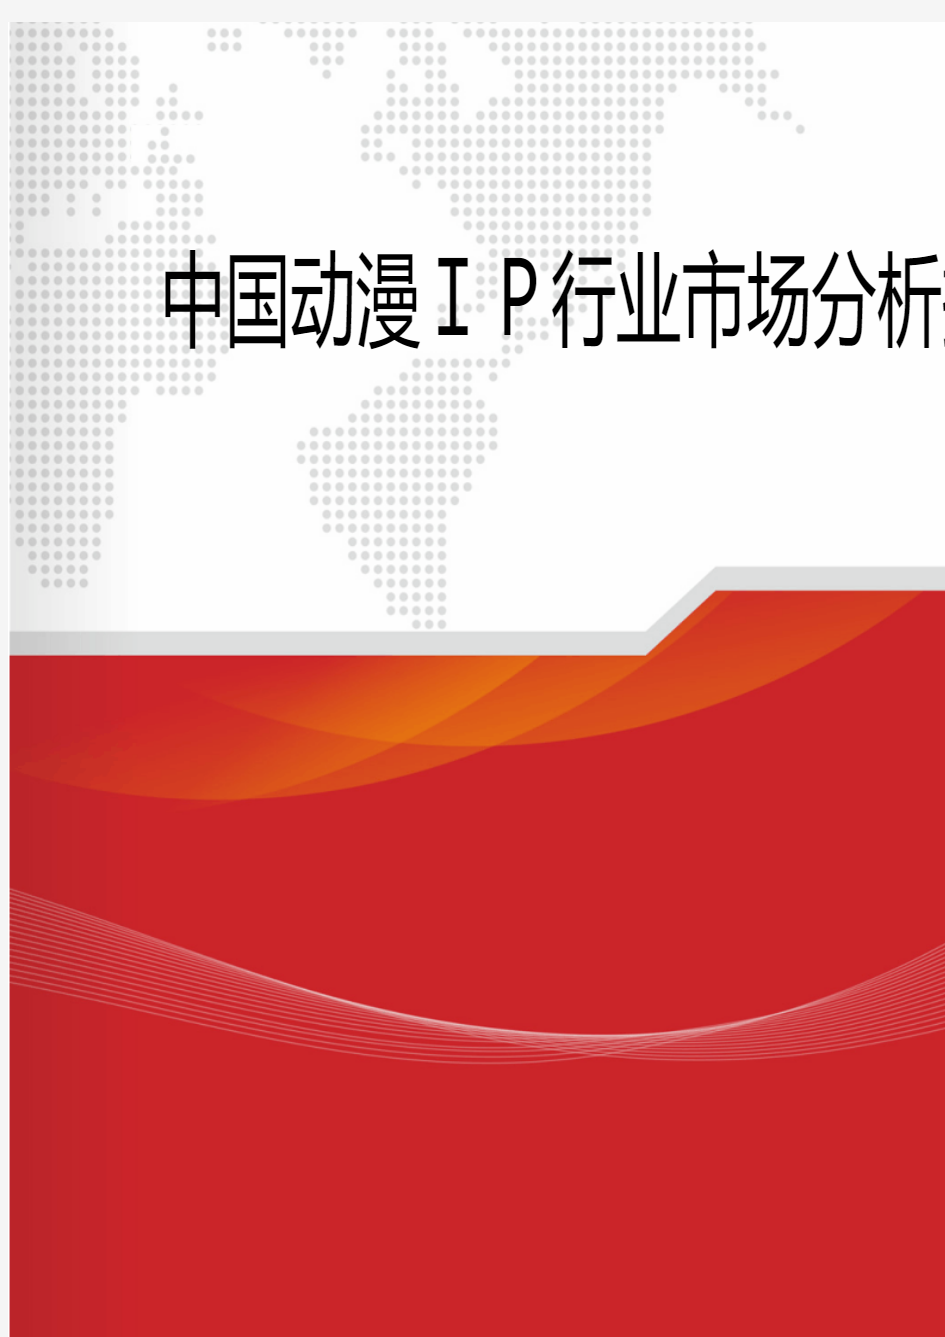 2018年中国动漫IP行业市场分析报告